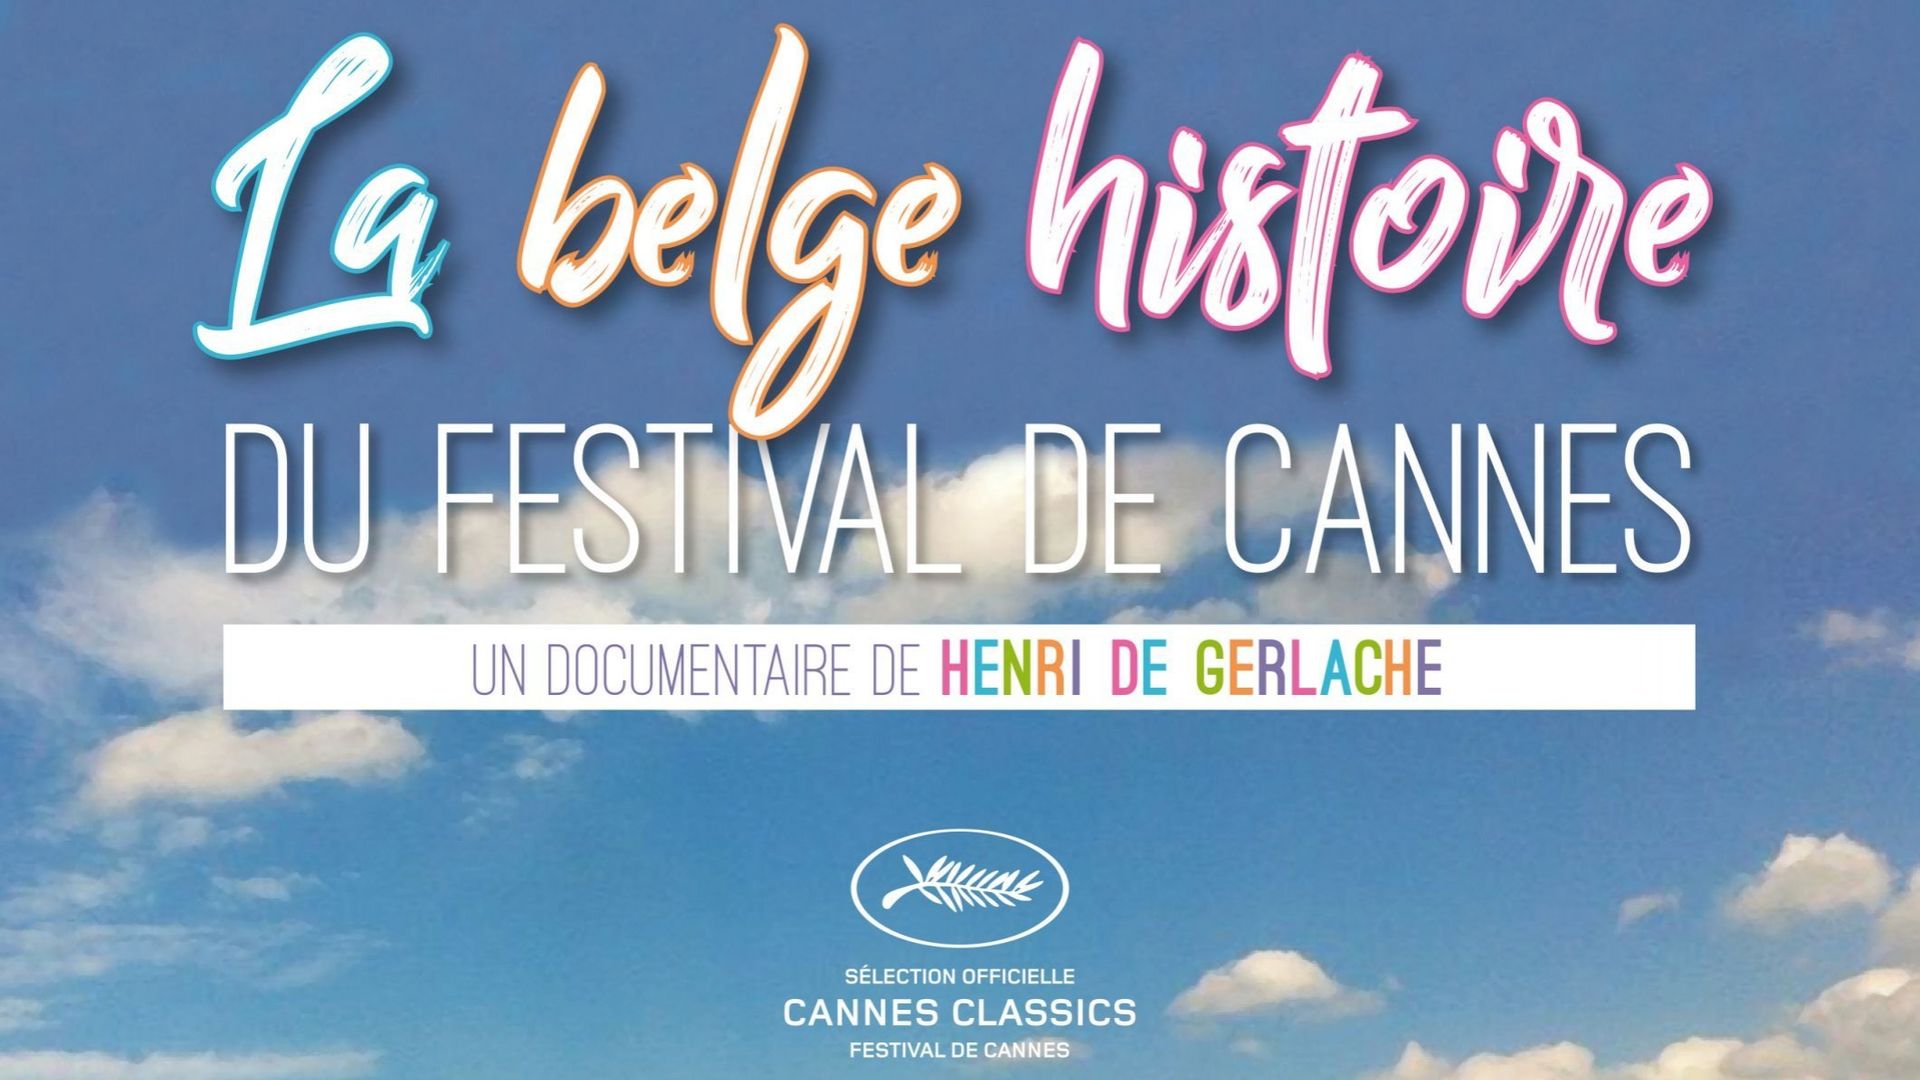 Festival de Cannes 2017: un documentaire de Henri de Gerlache sélectionné dans la section Cannes Classics